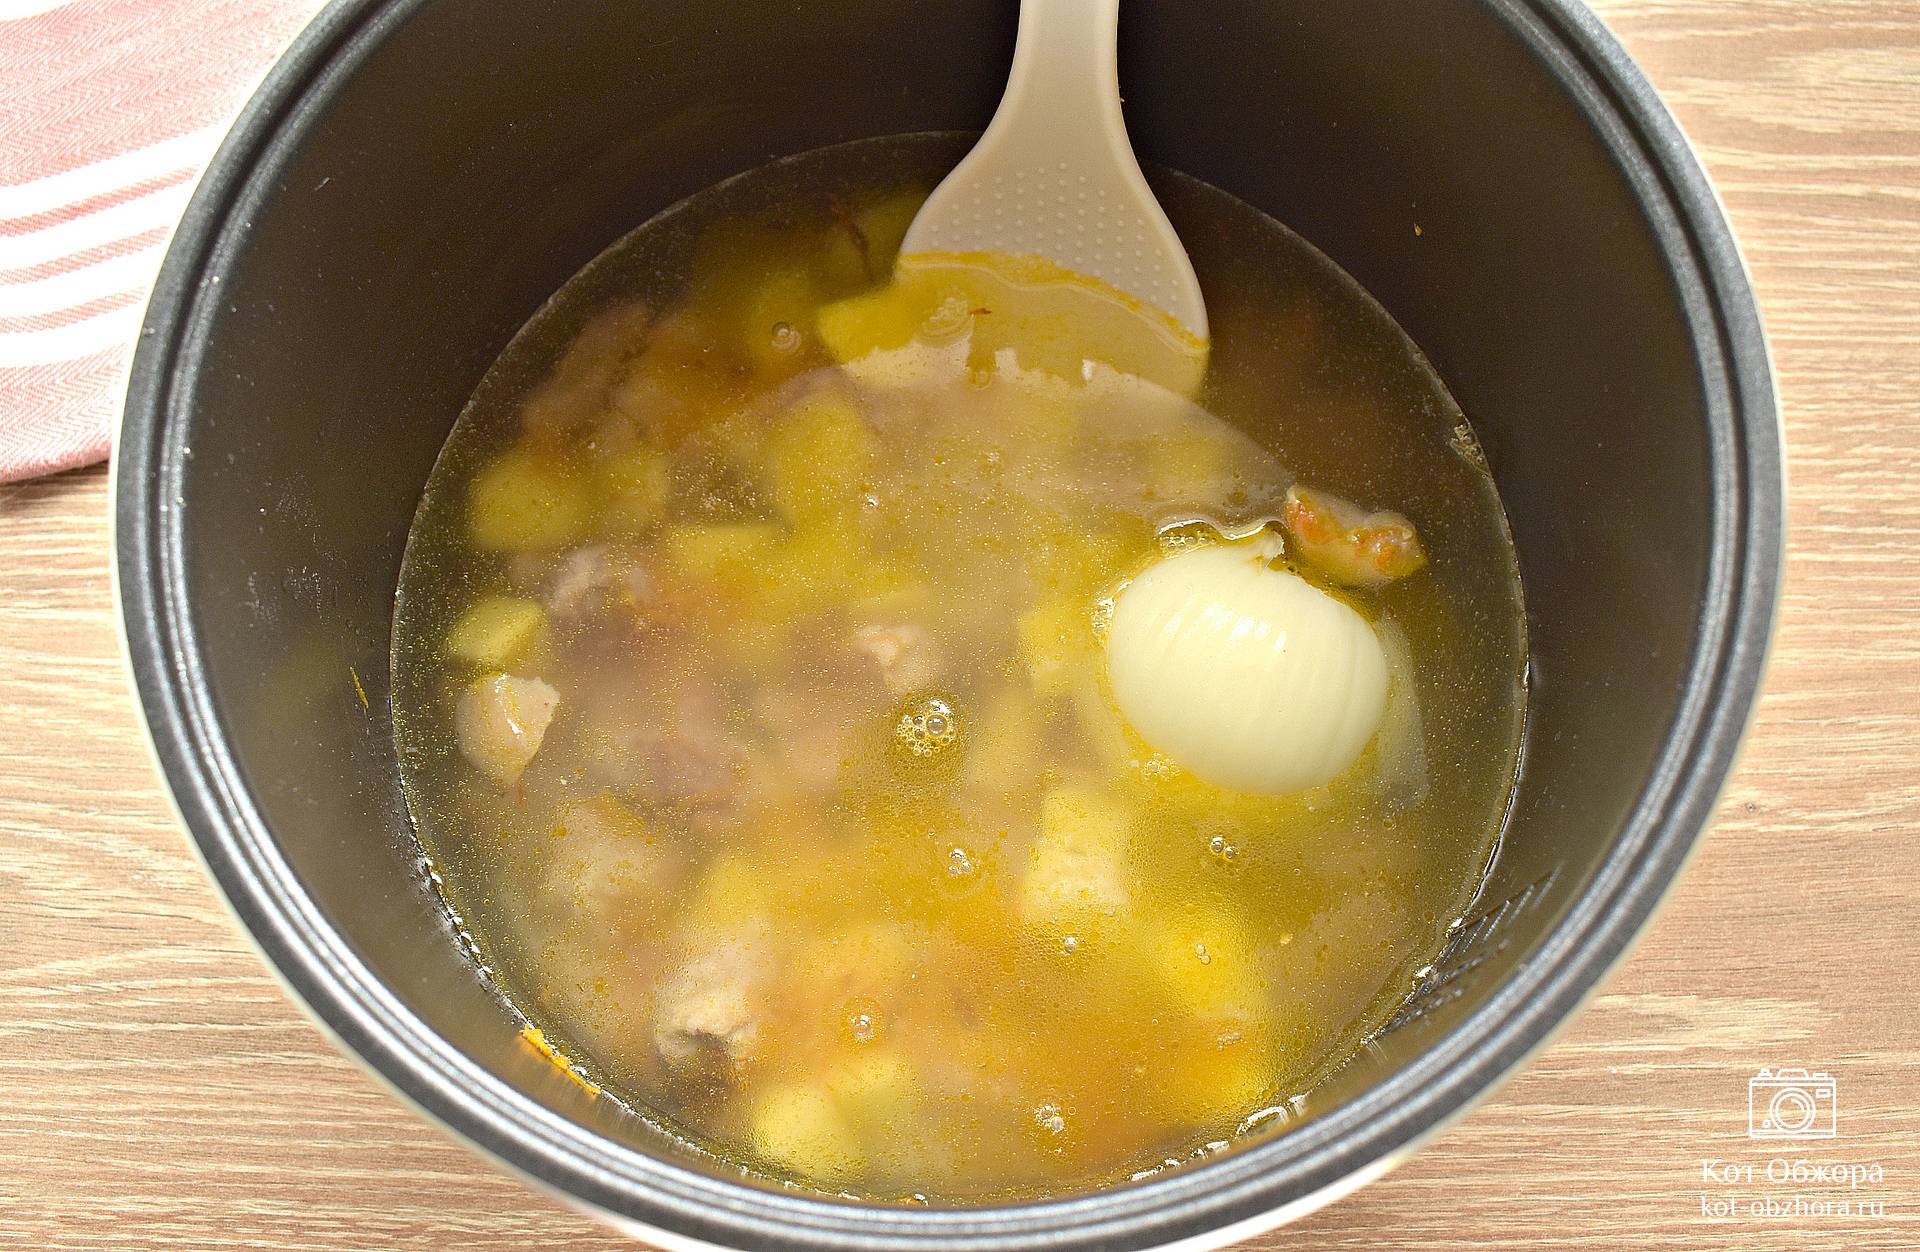 Рисовый суп с мясом в мультиварке